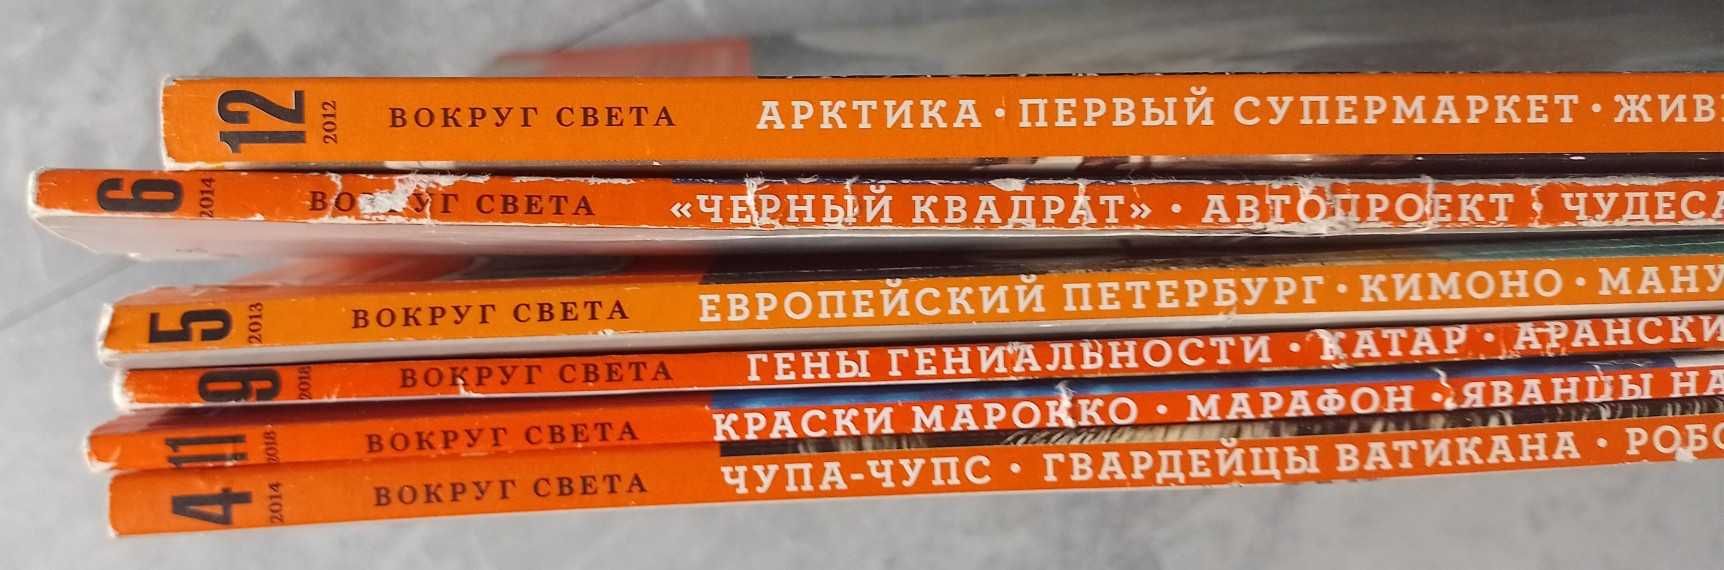 Продаю стару колекцію журналів "Вокруг света" 6шт